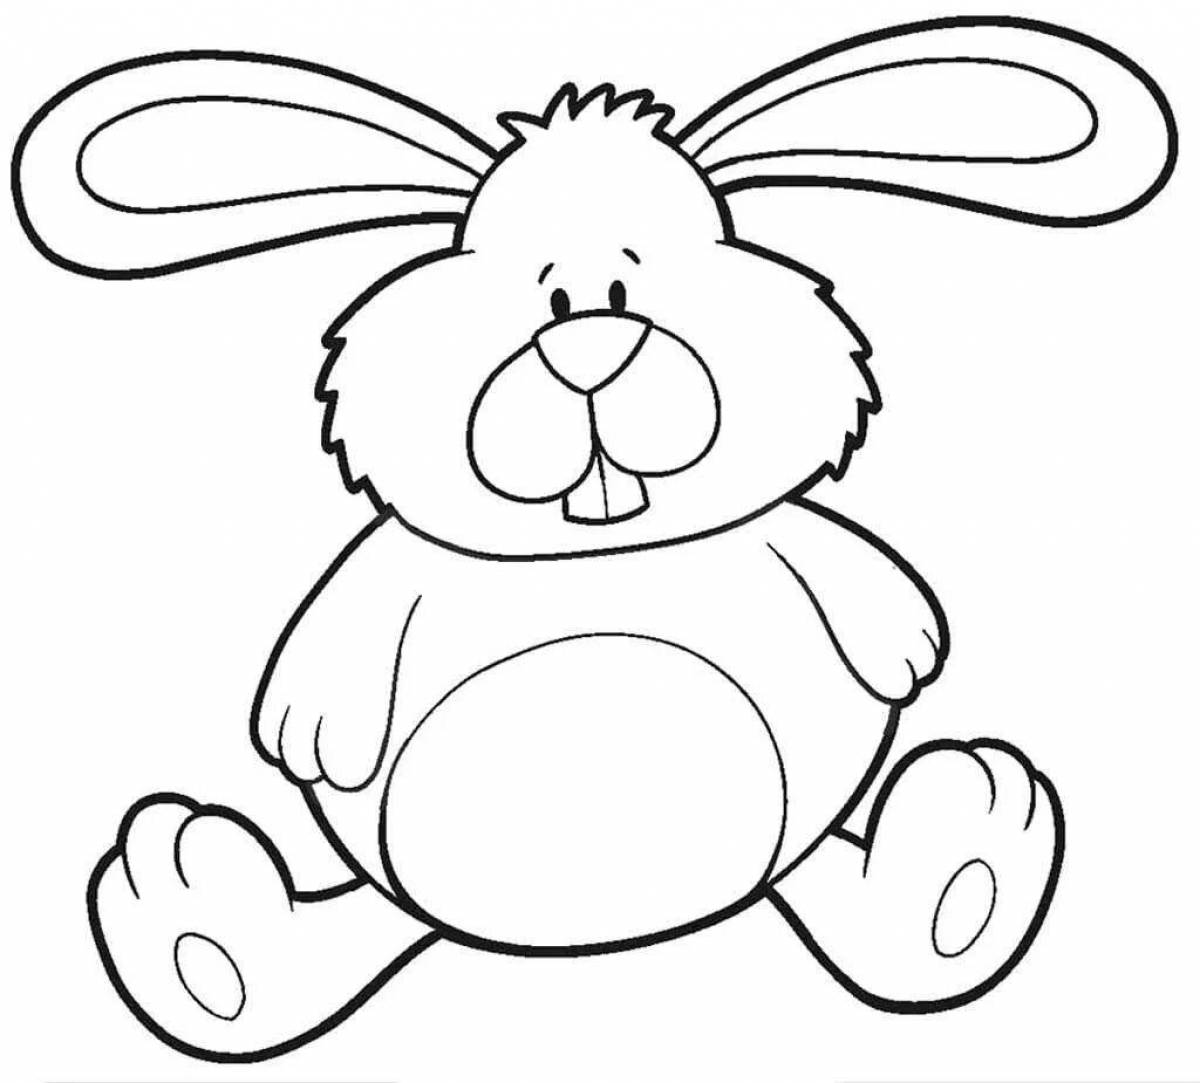 Развлекательный рисунок кролика для детей